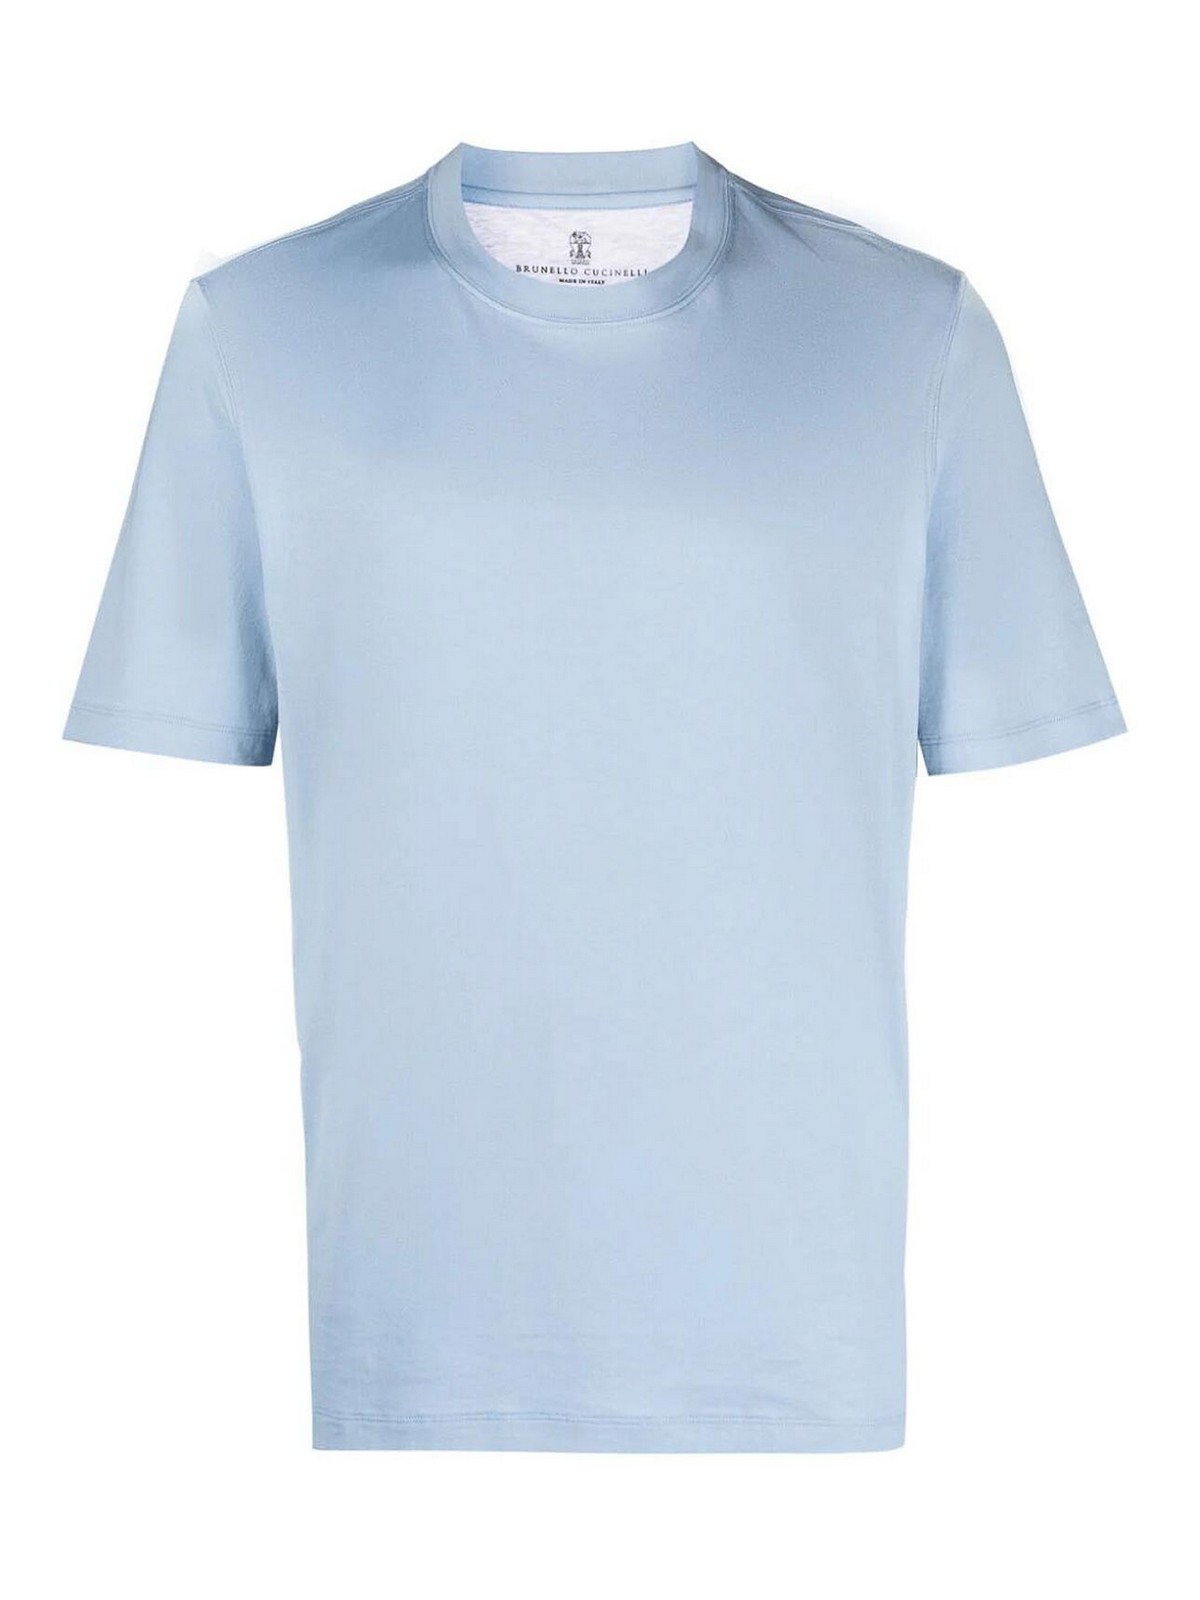 Brunello Cucinelli Camiseta - Azul Claro